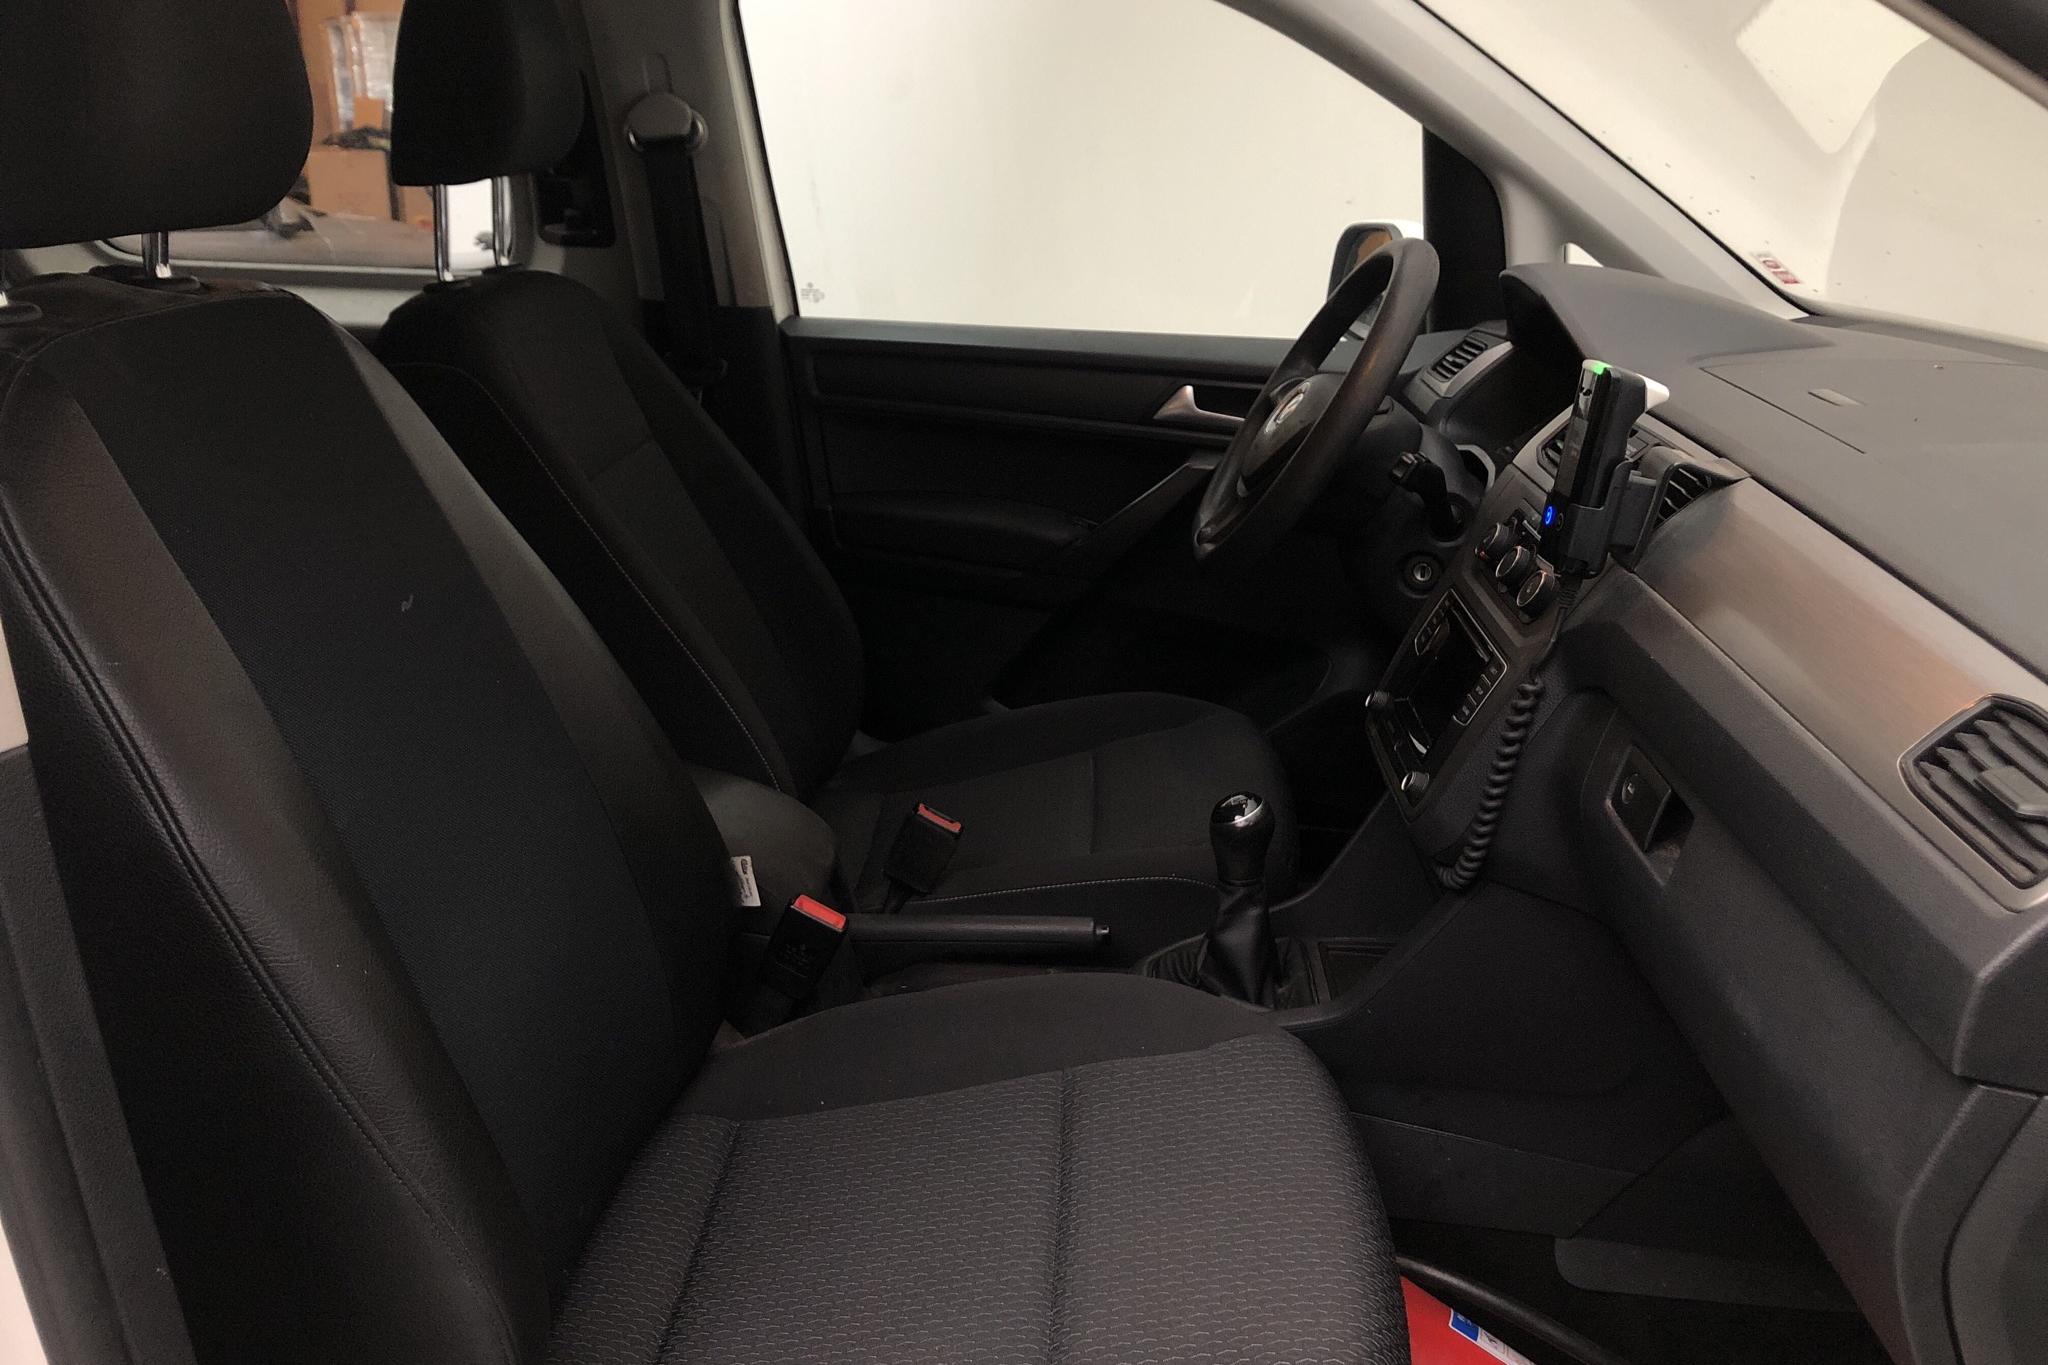 VW Caddy MPV Maxi 2.0 TDI (102hk) - 216 760 km - Manual - white - 2017